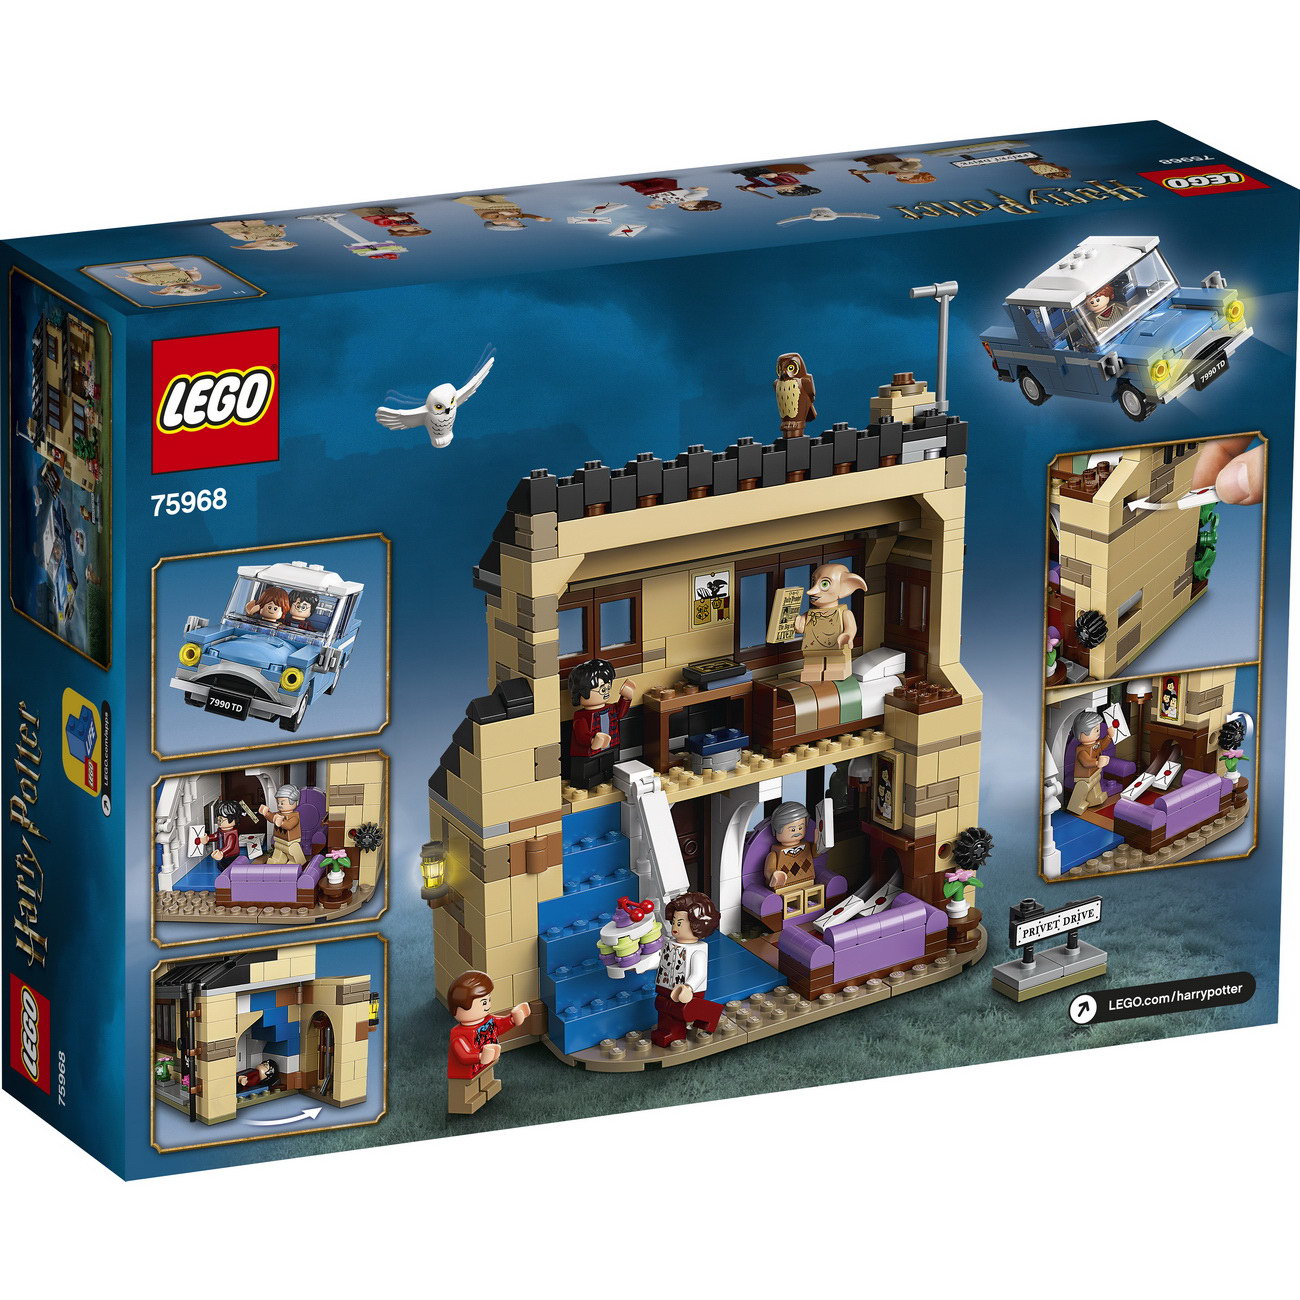 LEGO Harry Potter 75968 - Ligusterweg 4 - Privet Drive